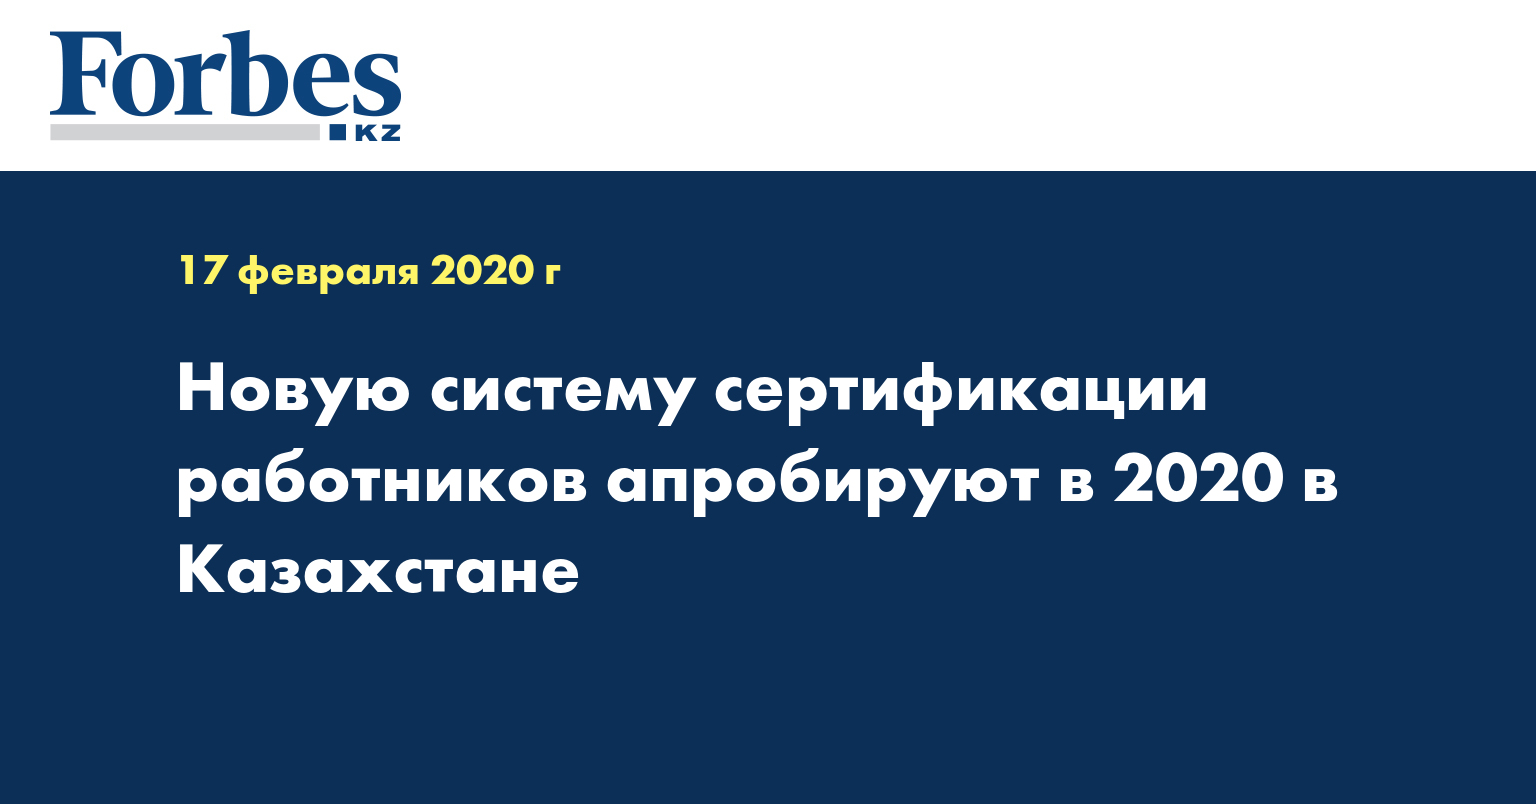 Новую систему сертификации работников апробируют в 2020 в Казахстане